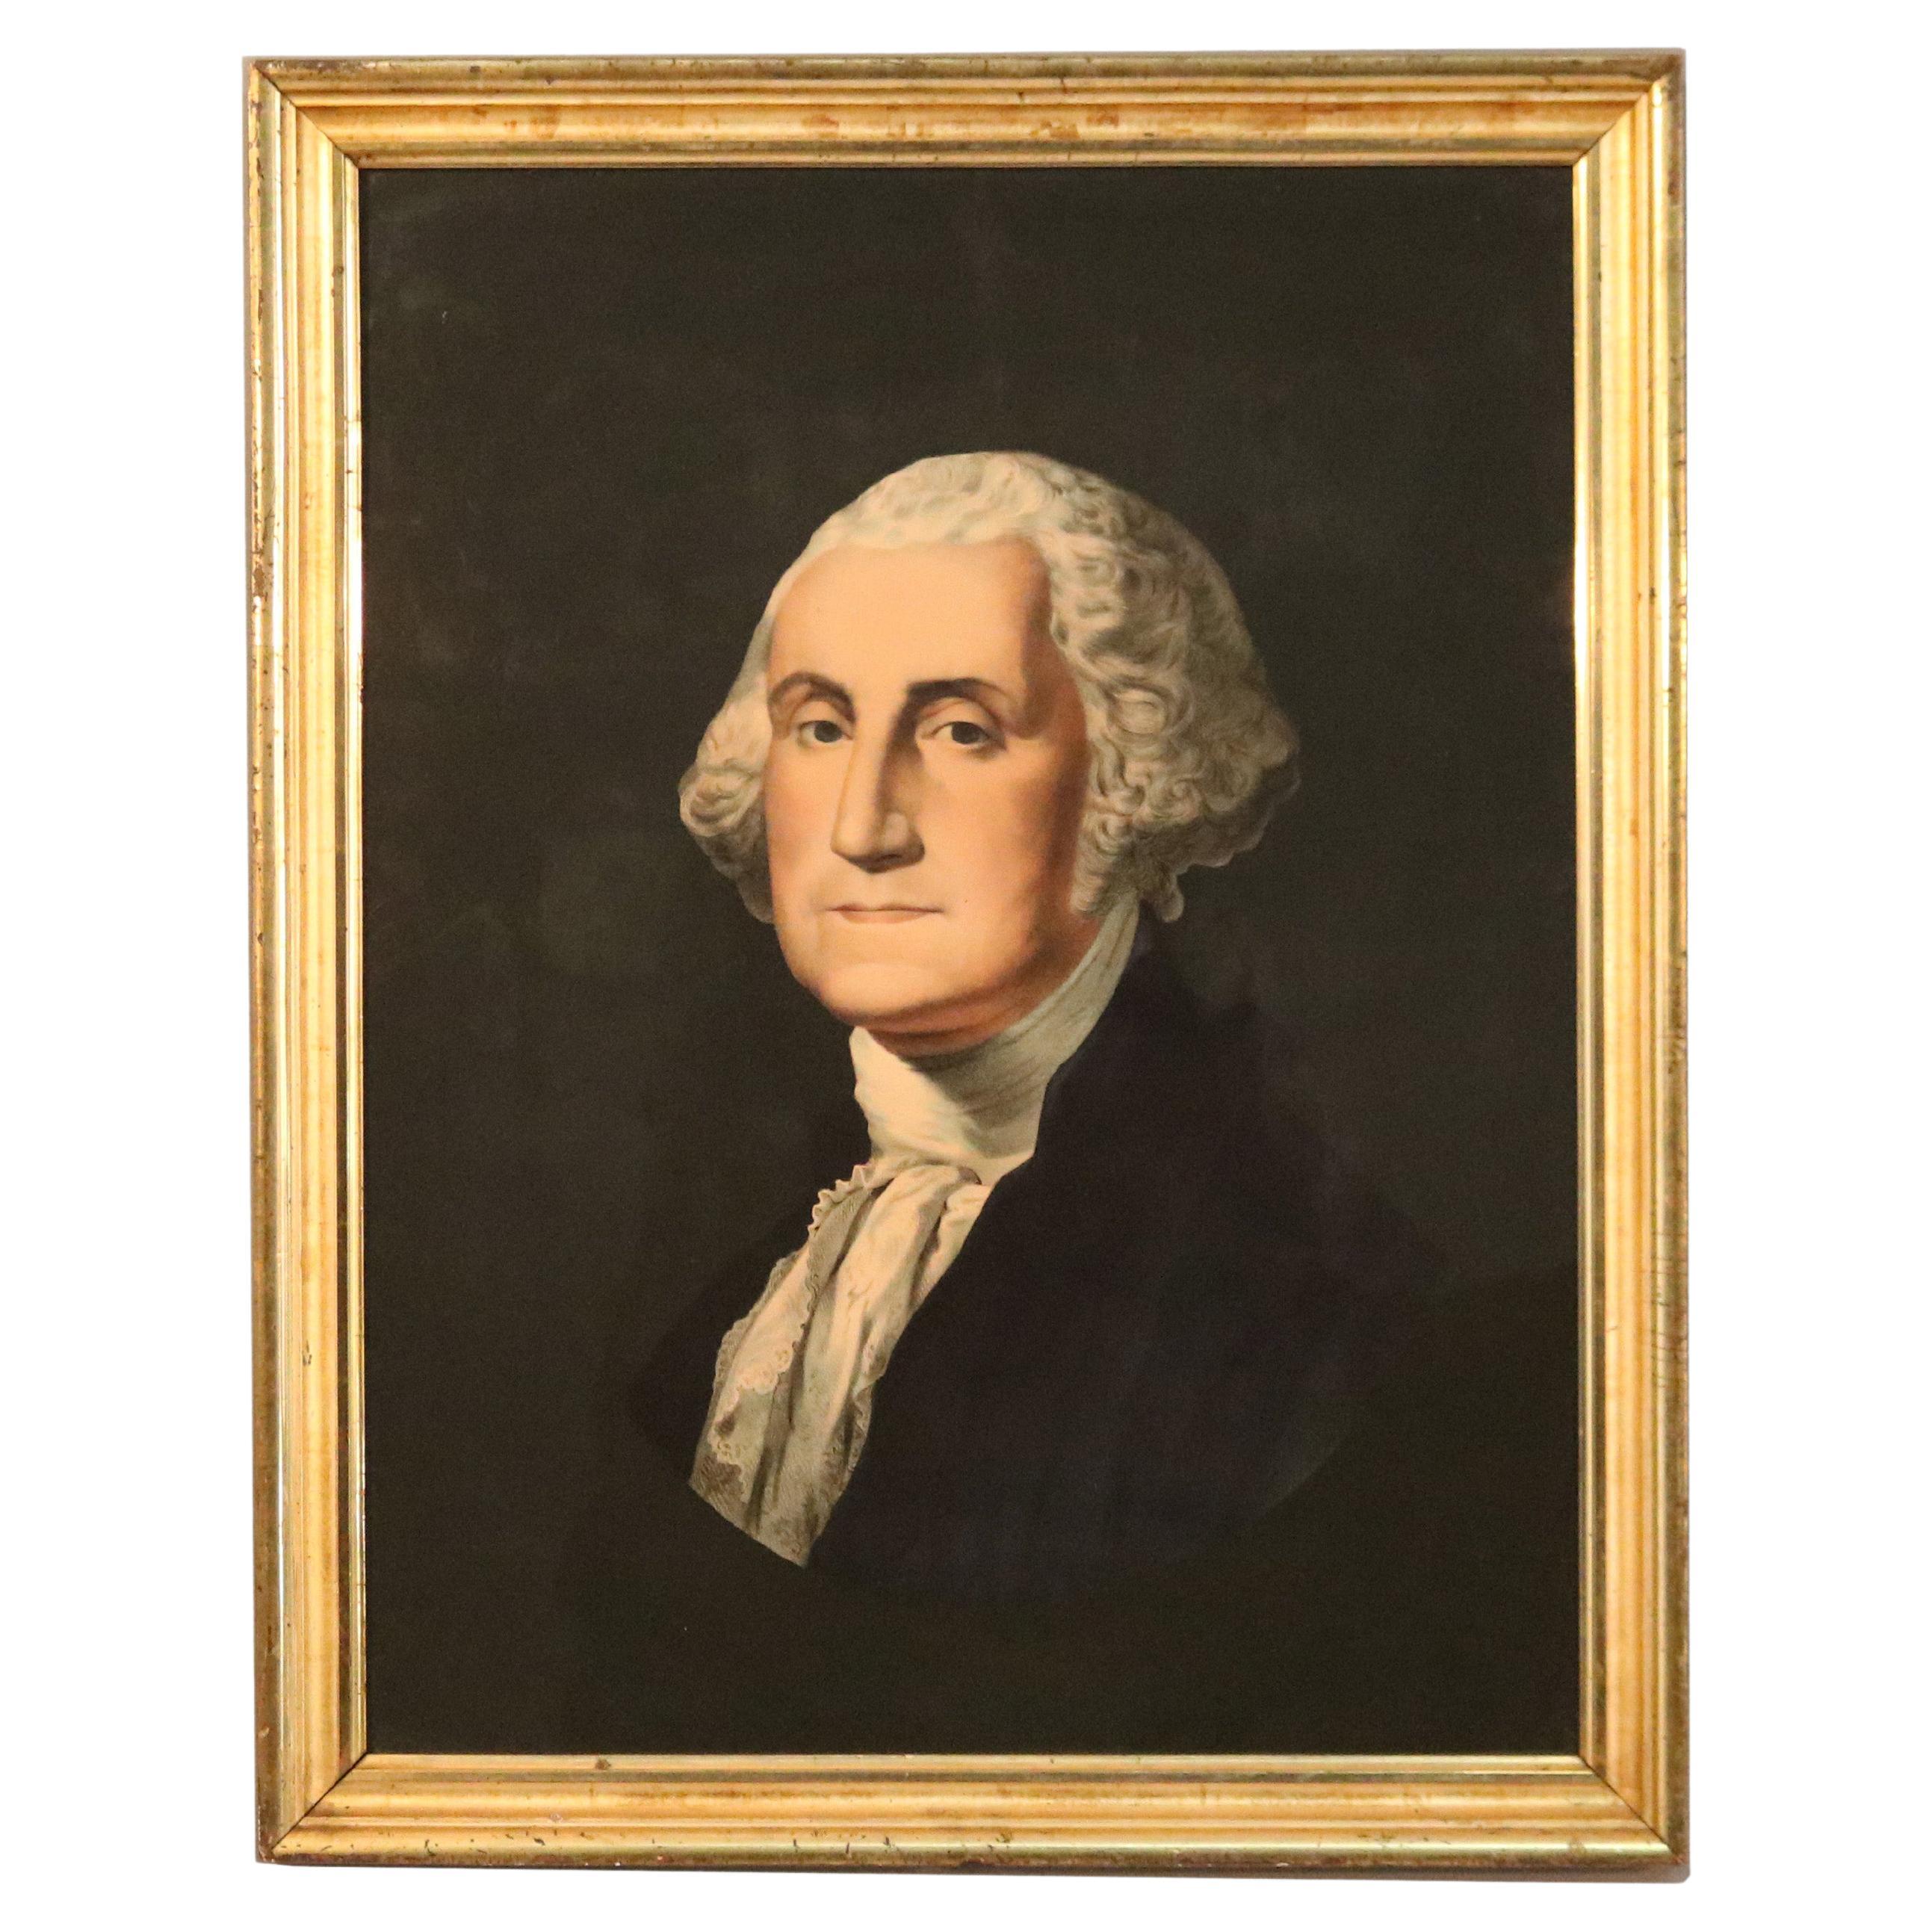 Antique Lithograph, Portrait of George Washington in Lemon Gilt Frame, c1860